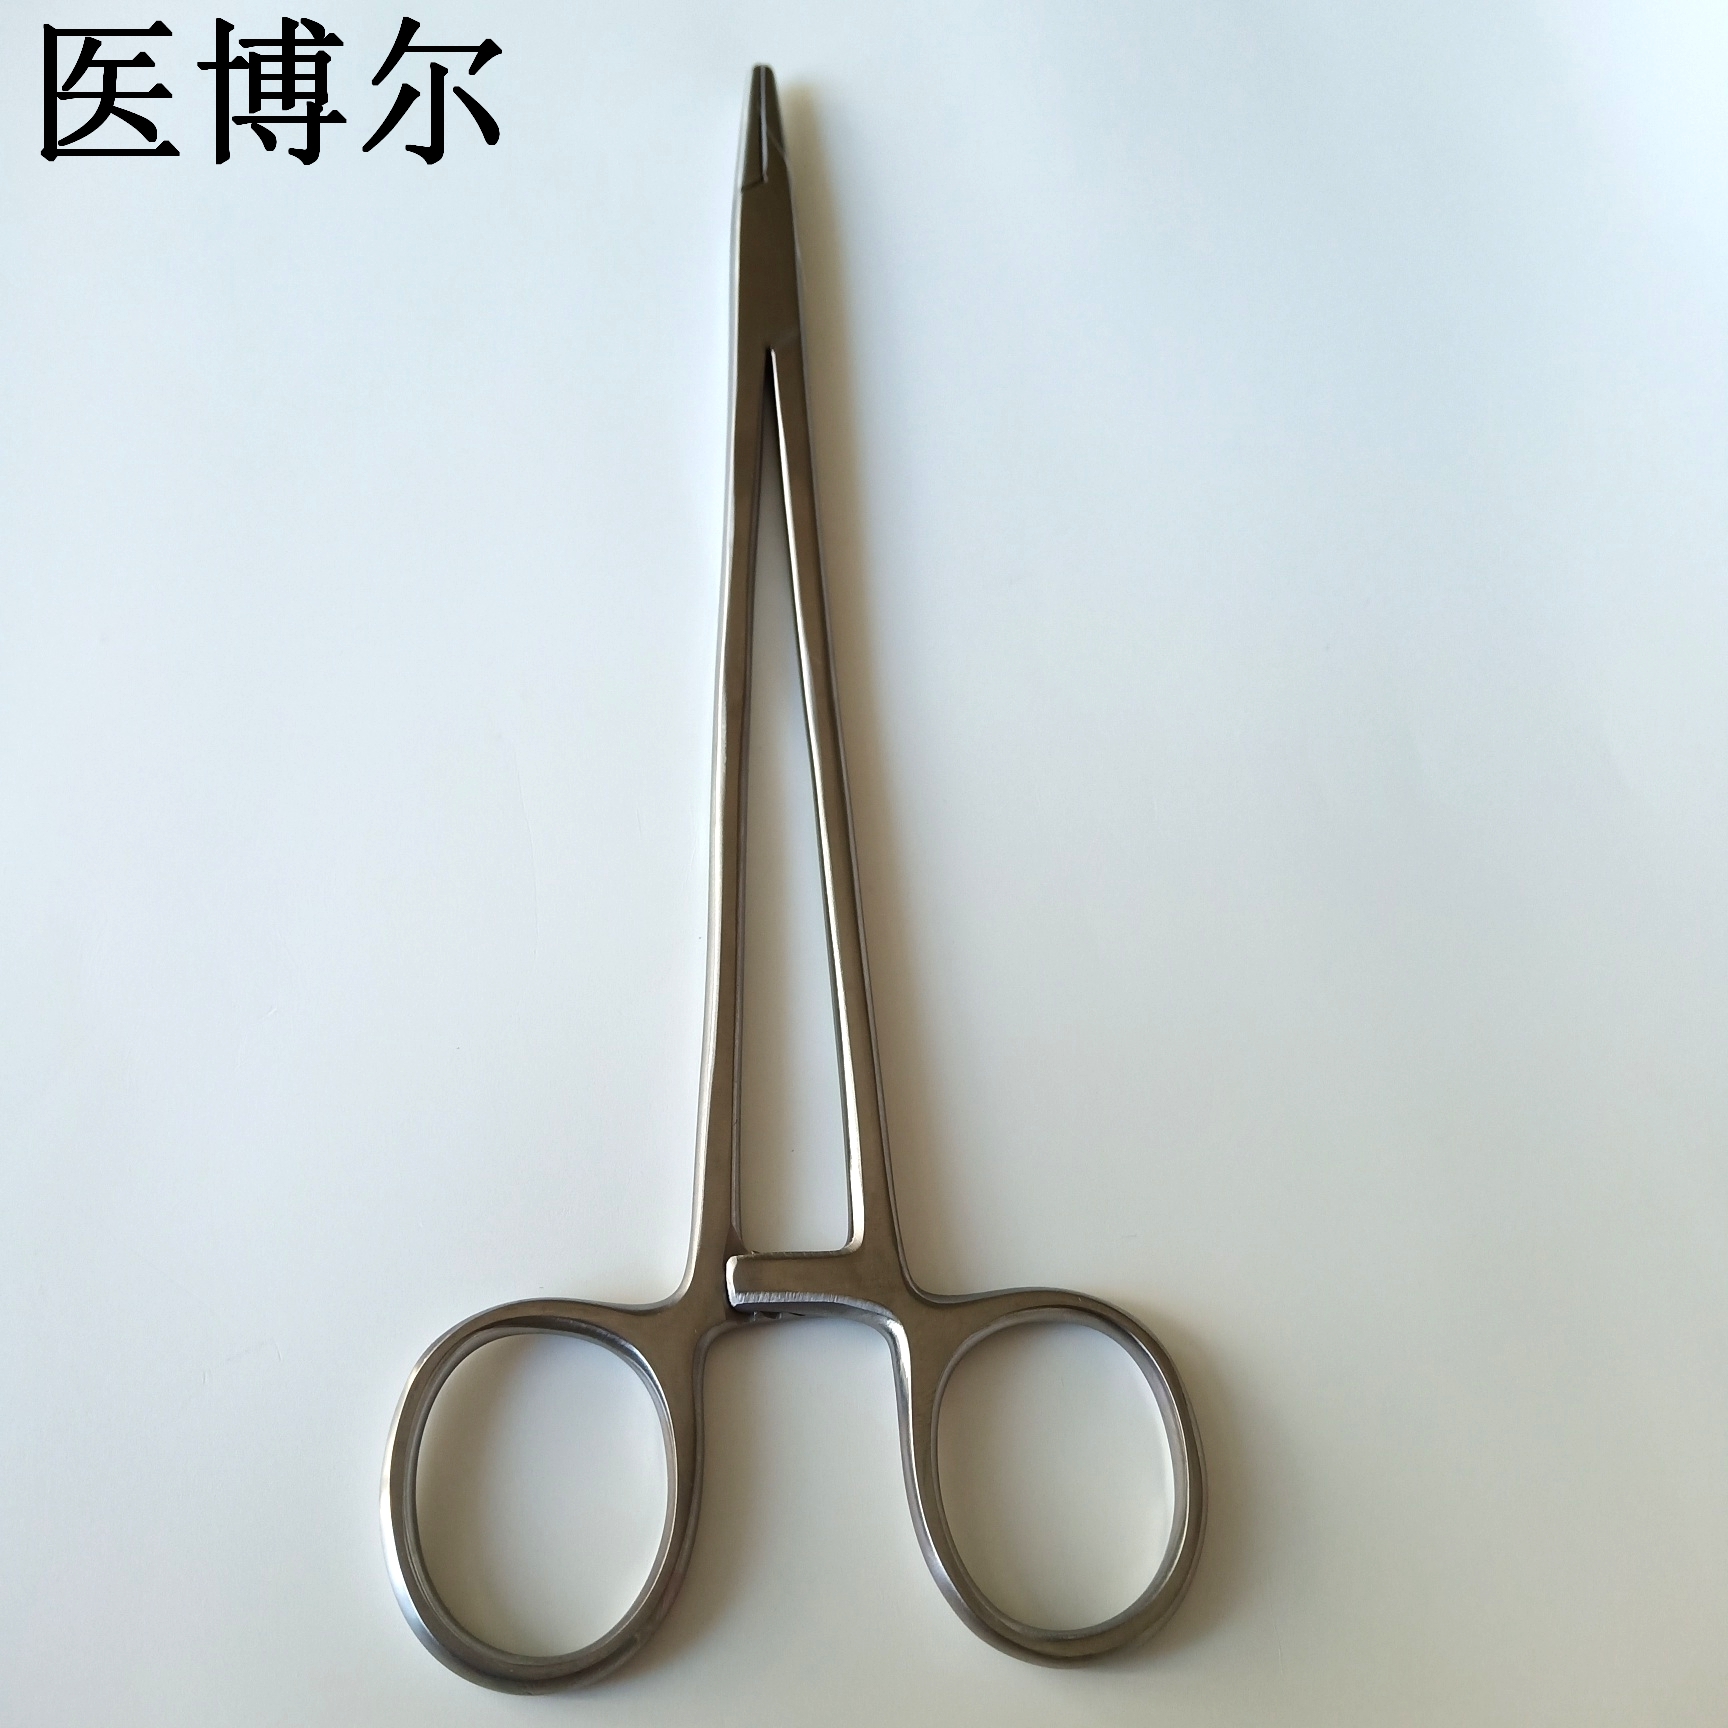 20cm粗针持针器 (2)_看图王.jpg